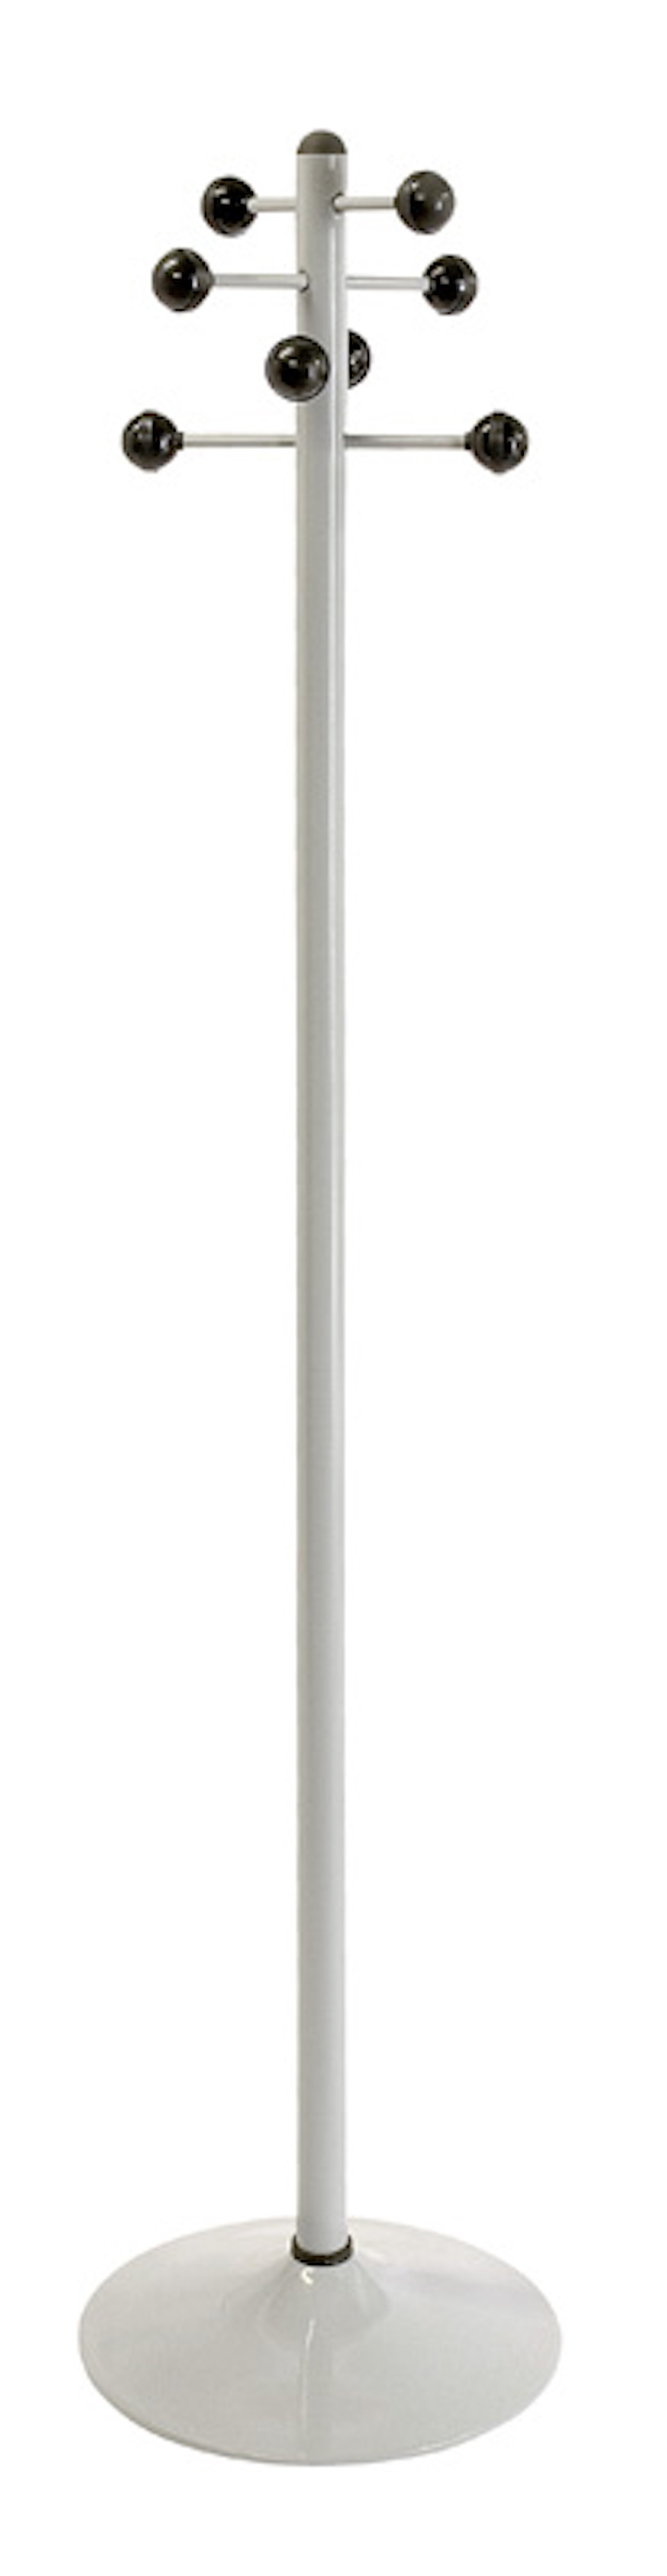 Garderobenständer aus lackiertem Stahl mit 8 Kunststoff Knöpfen | Höhe 178cm | Fußplatte aus Metall | Grau